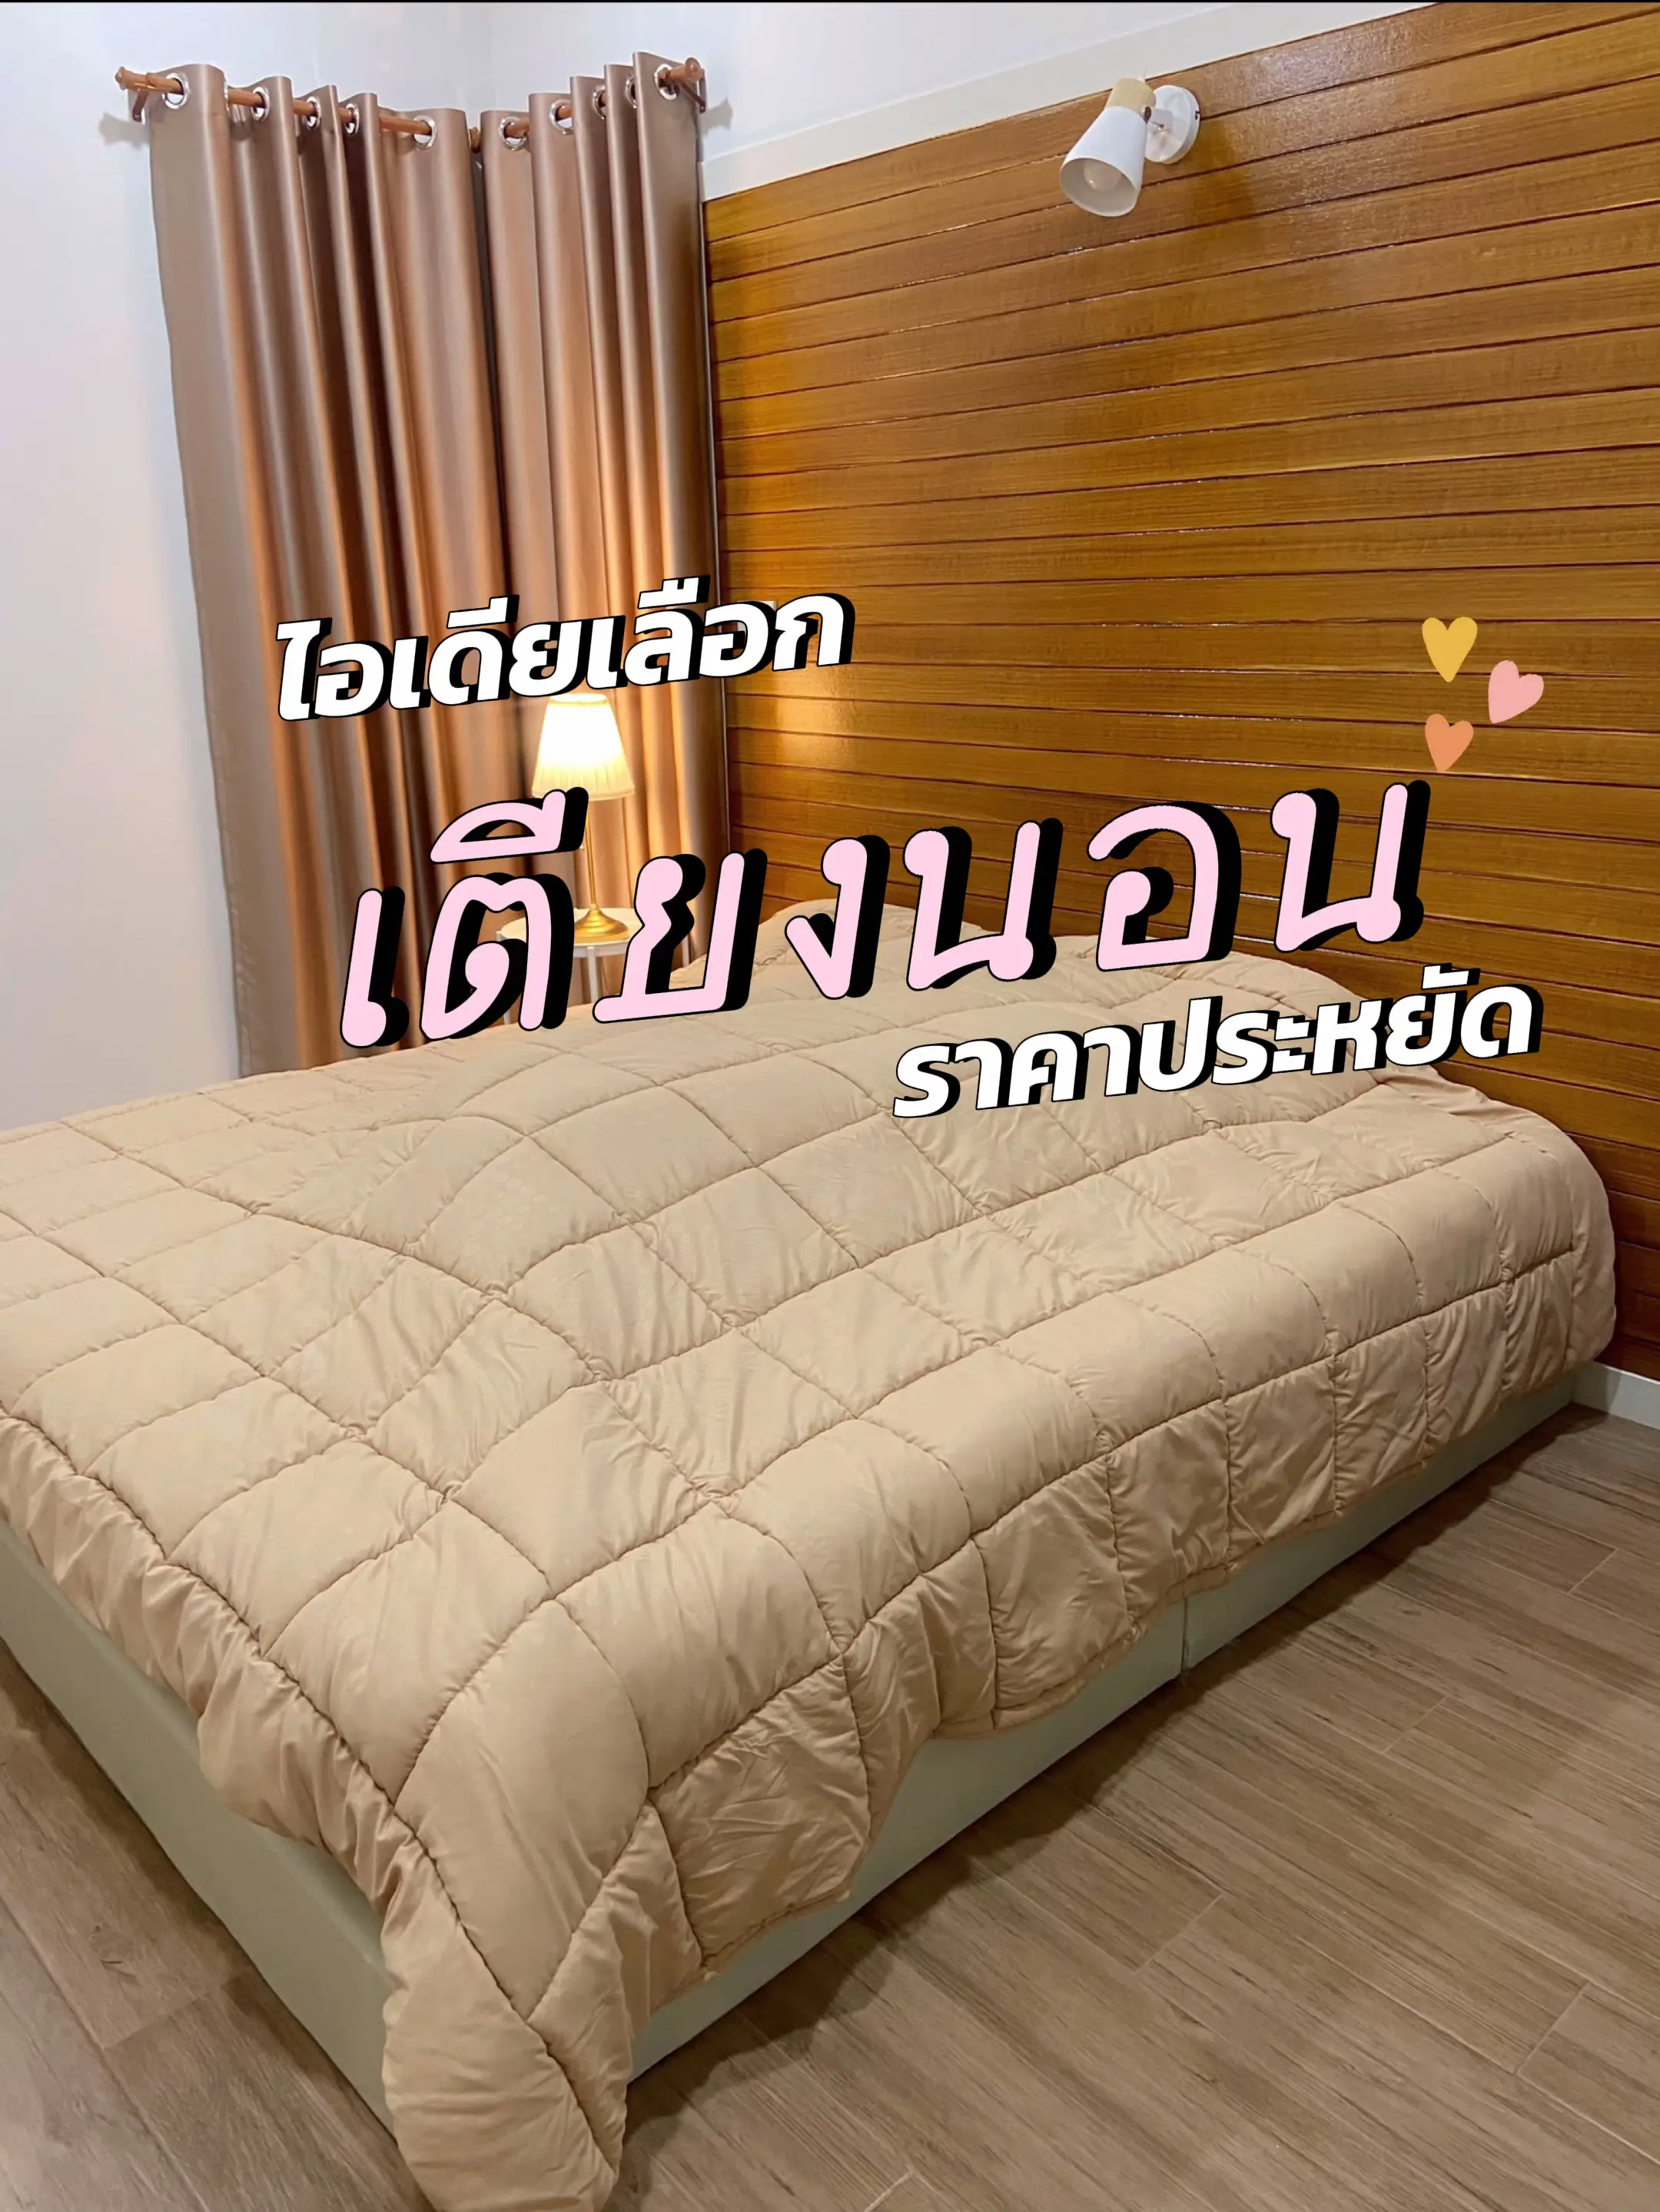 ไอเดียเตียงนอนงบประหยัด | บทความที่โพสต์โดย Panuttha Aör | Lemon8